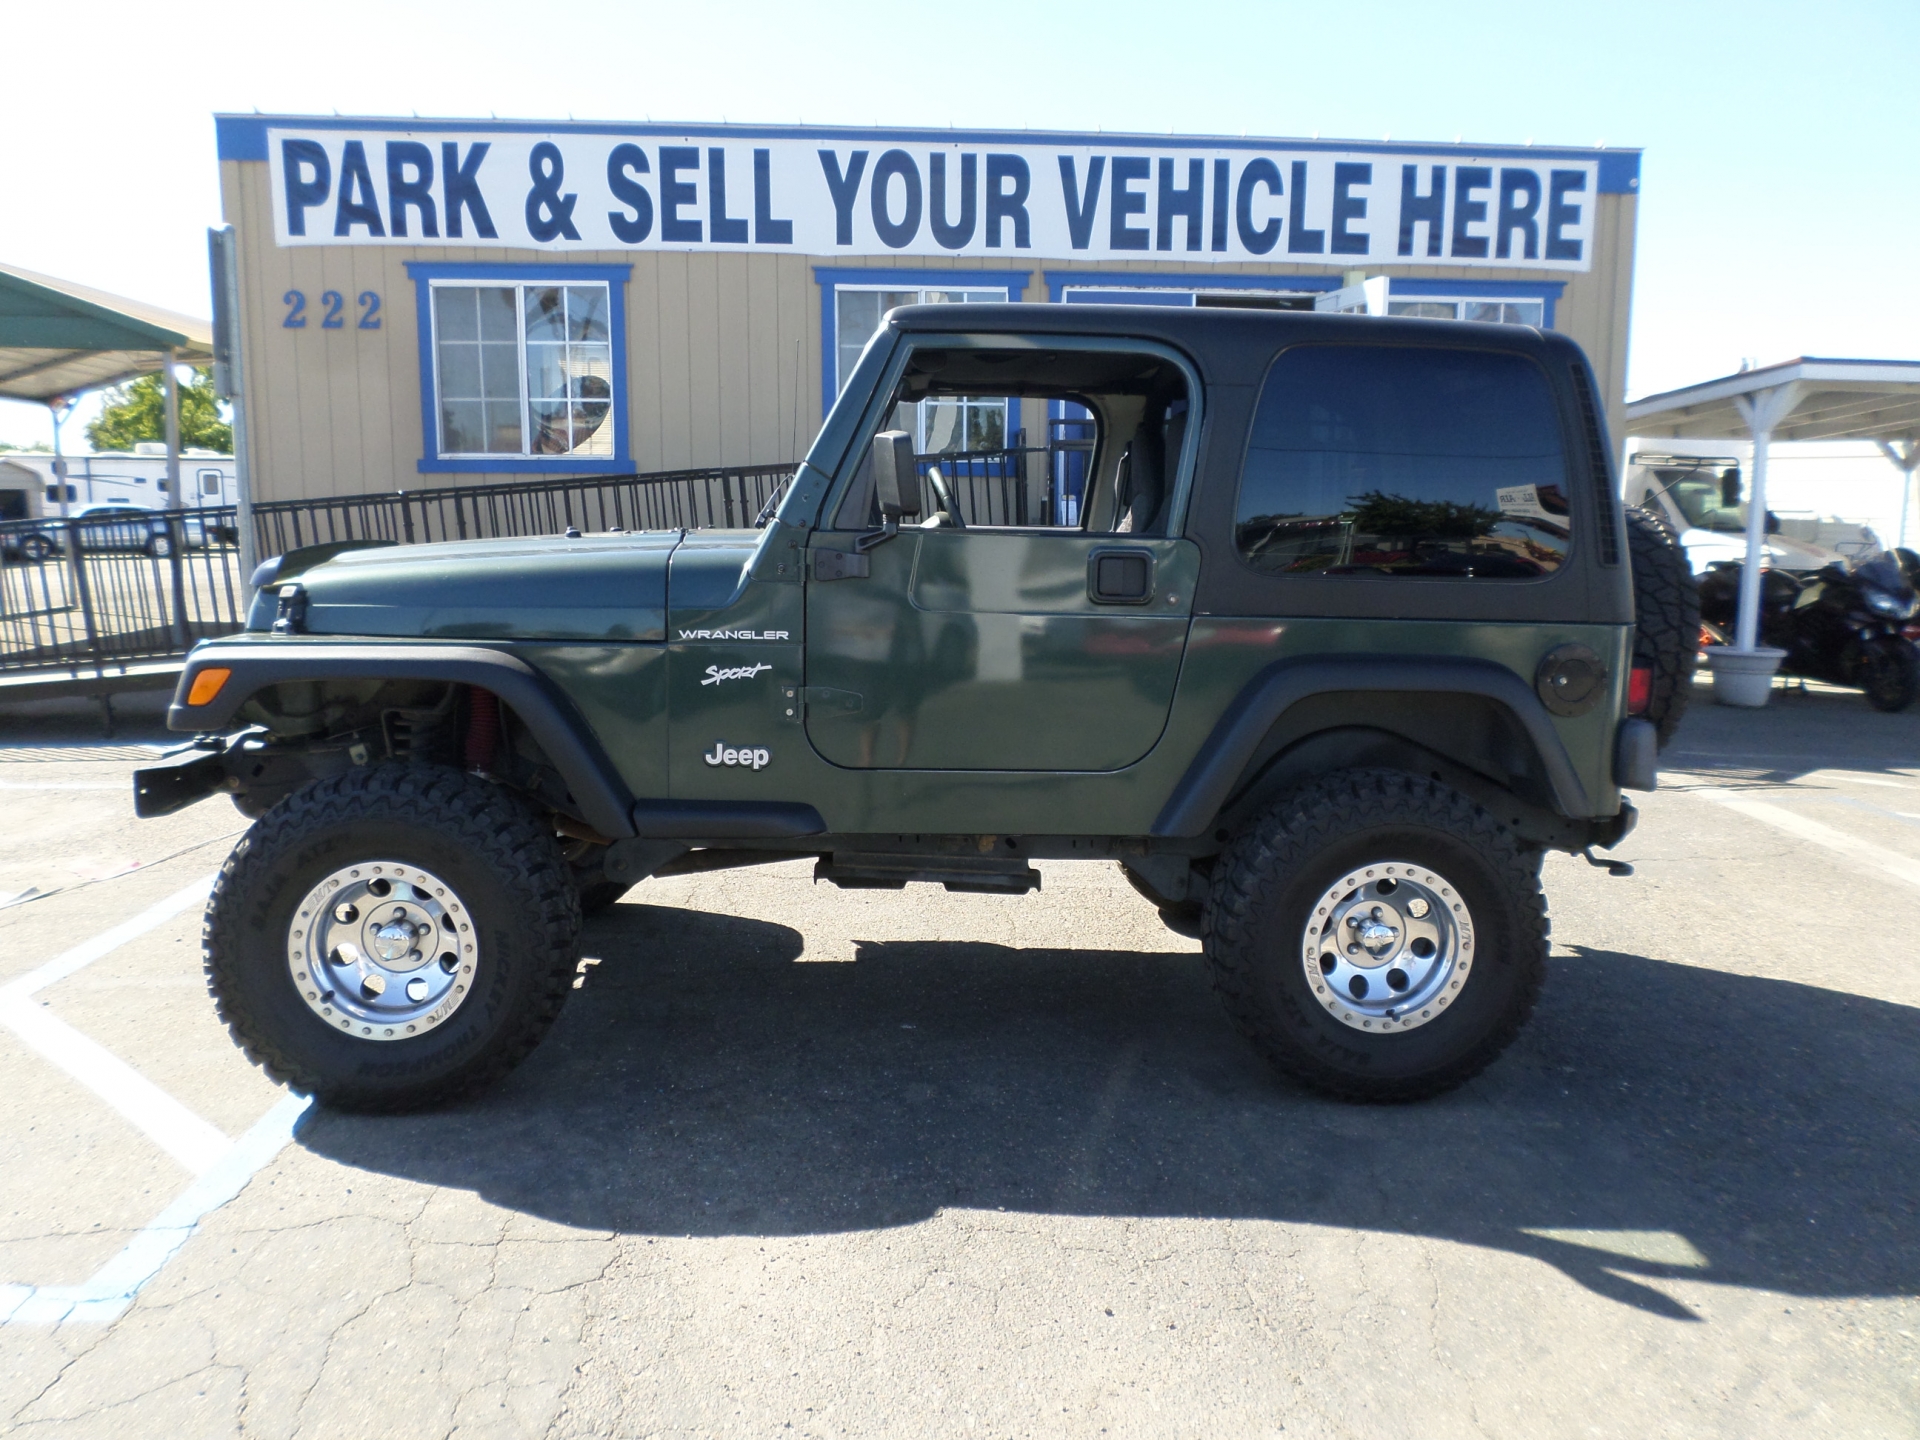 SUV for sale: 2002 Jeep Wrangler Sport in Lodi Stockton CA - Lodi Park and  Sell